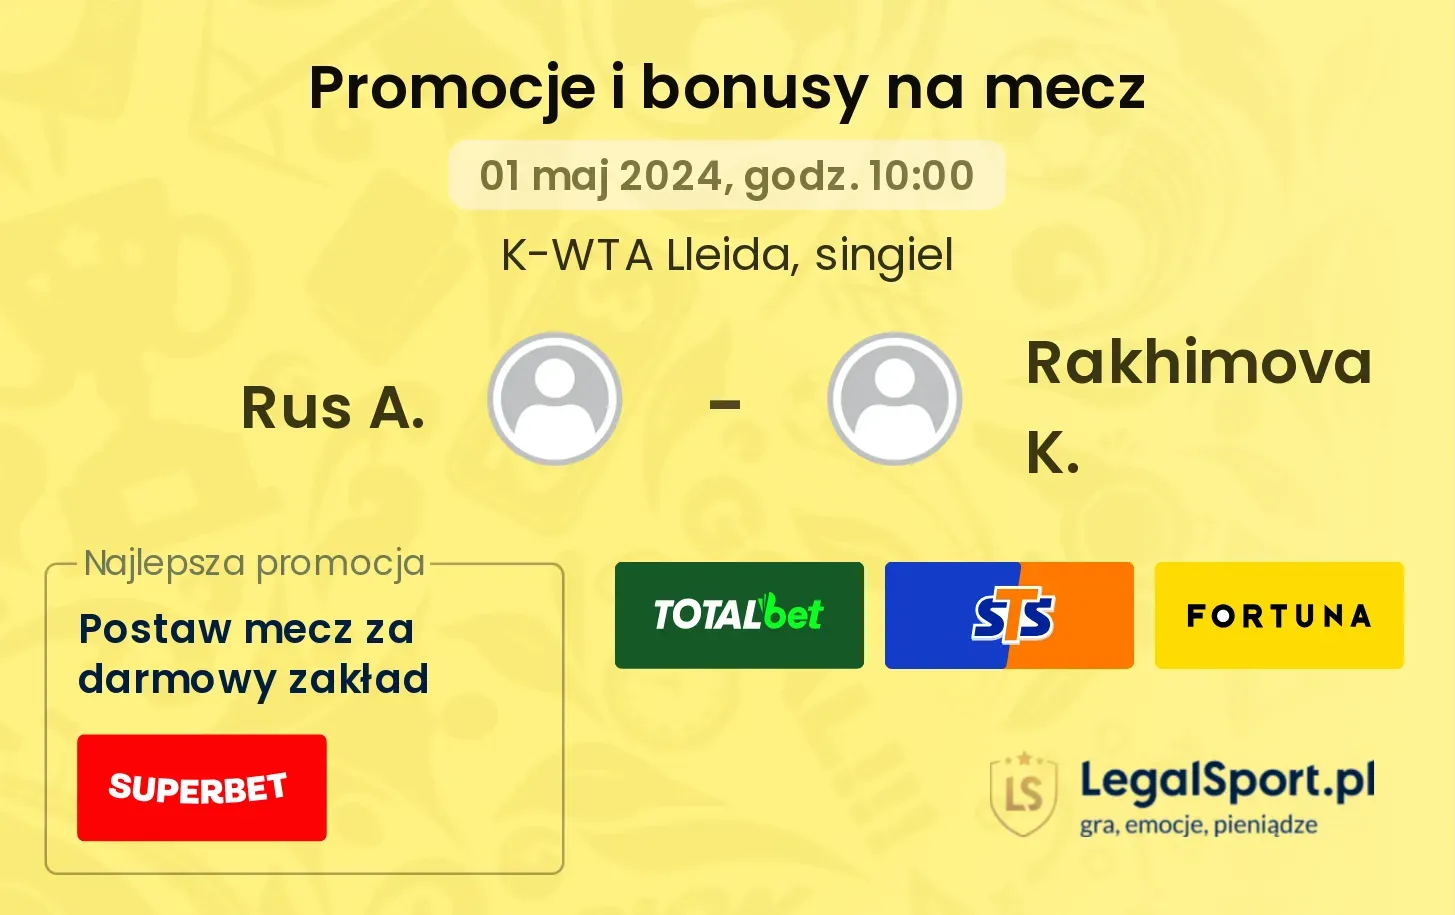 Rus A. - Rakhimova K. promocje bonusy na mecz